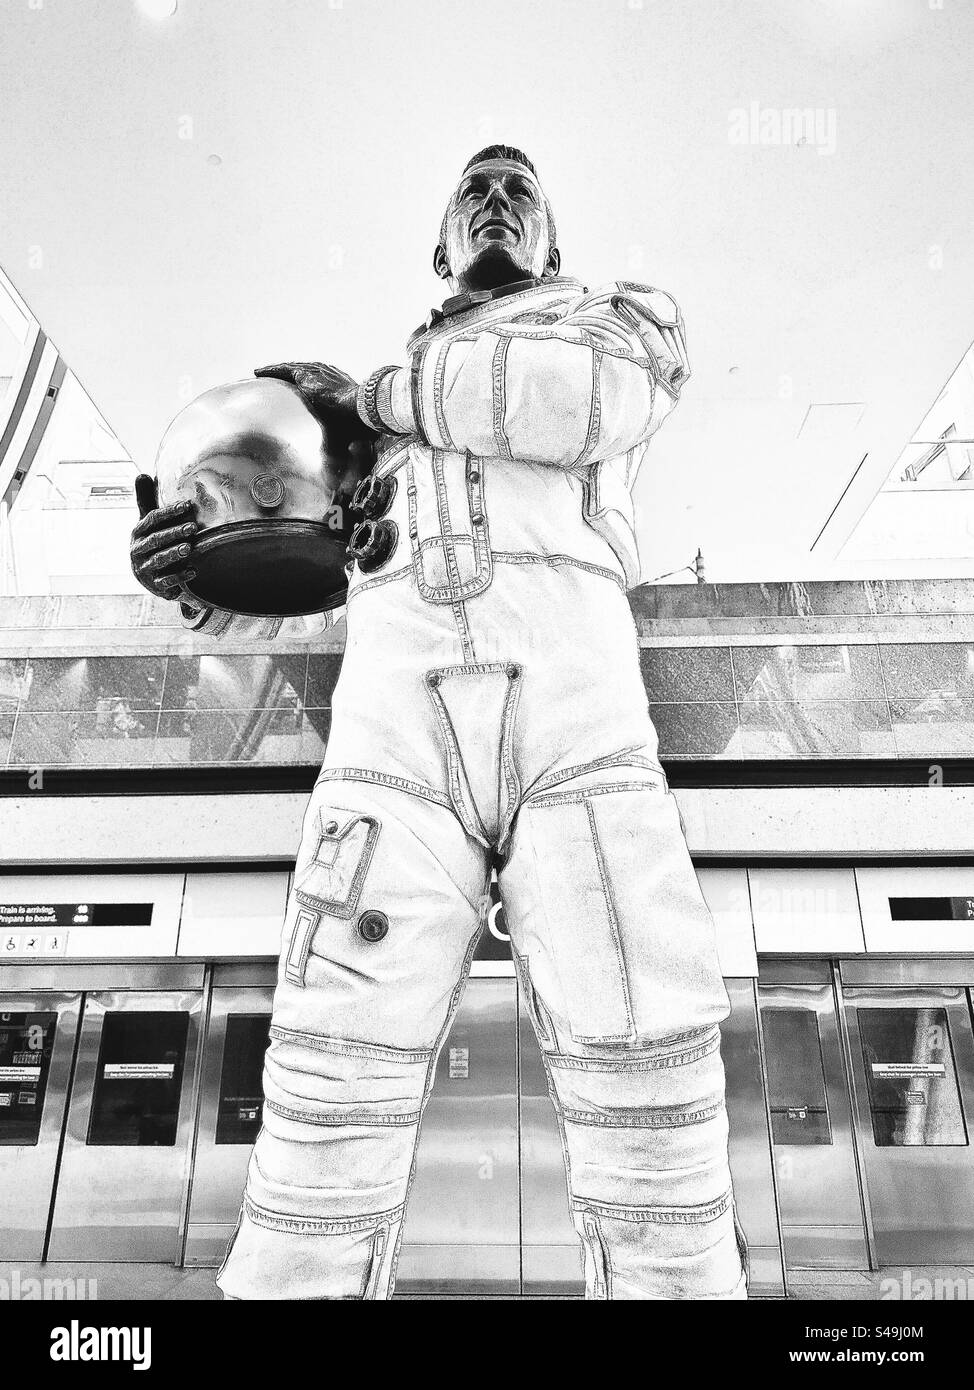 Denver, Colorado, USA: Statua di John L. “Jack” Swigert Jr. Presso l'aeroporto internazionale di Denver (DIA). Astronauta della NASA americana, ingegnere, pilota dell'aeronautica americana e politico. Filtro bianco e nero. Foto Stock